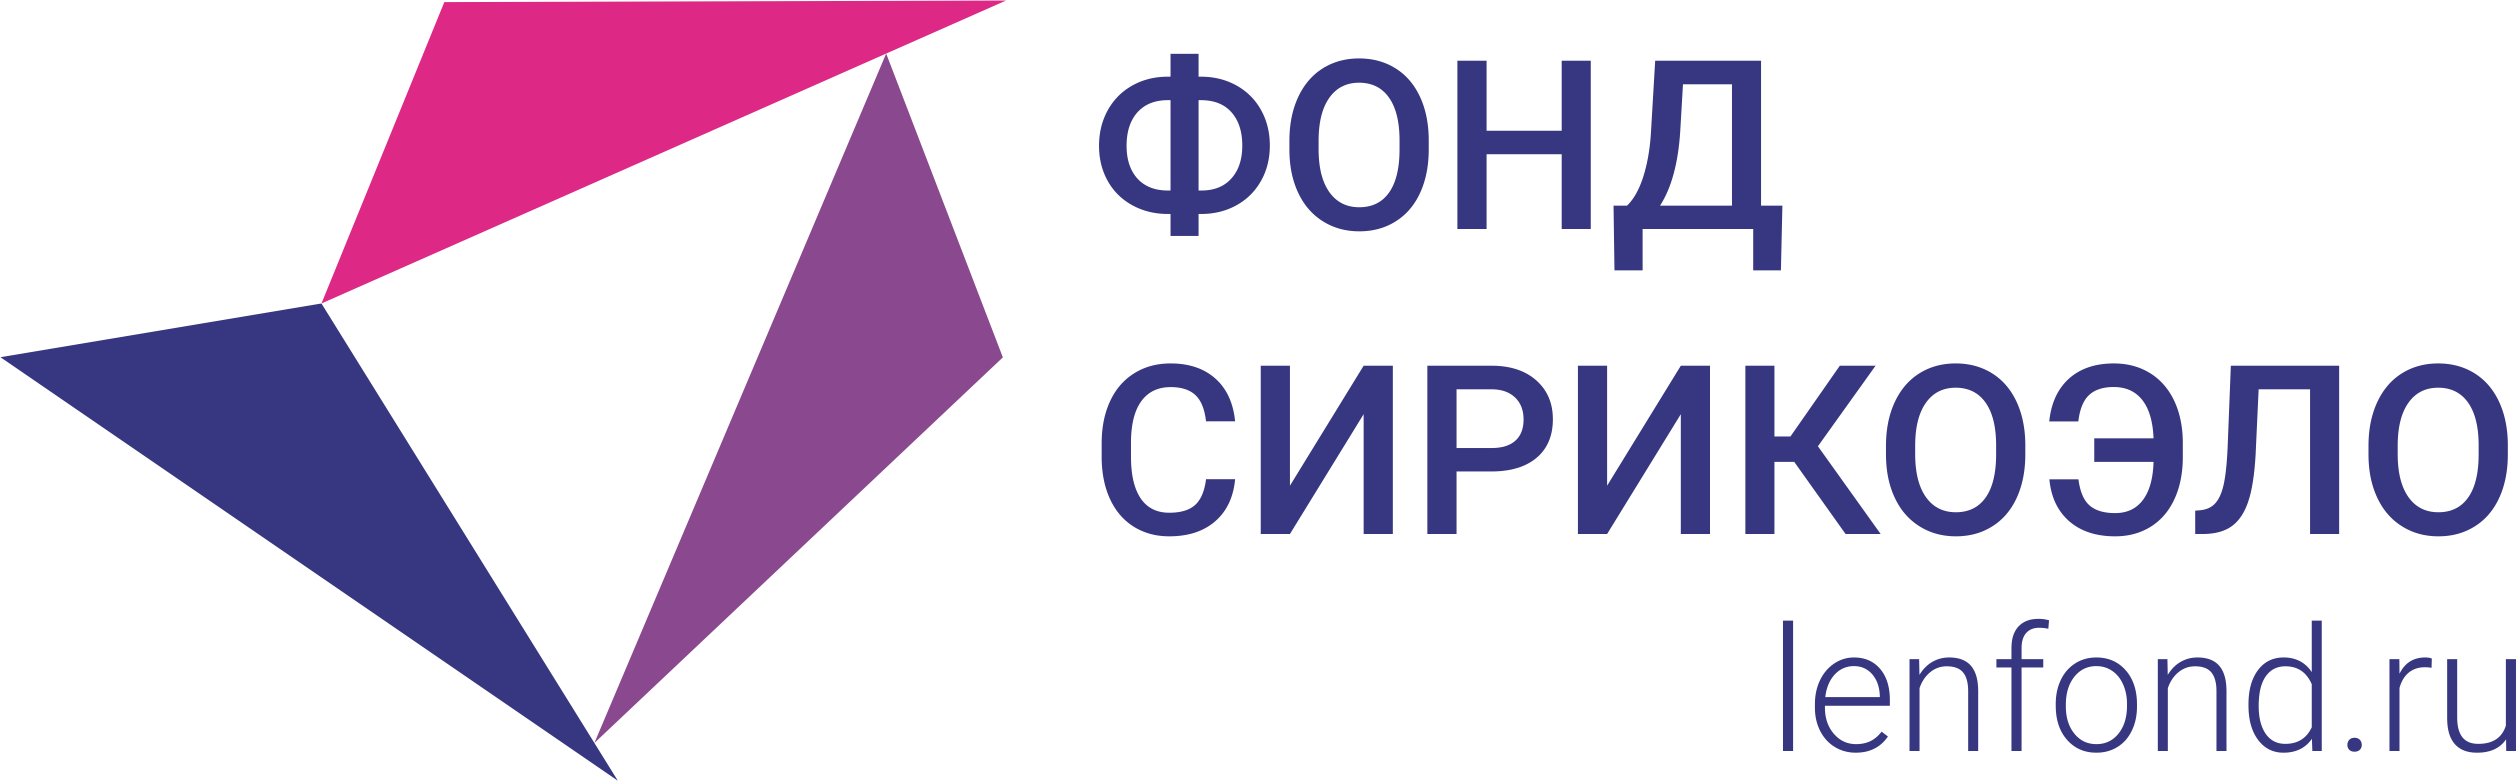 logo dla podpisi cvet